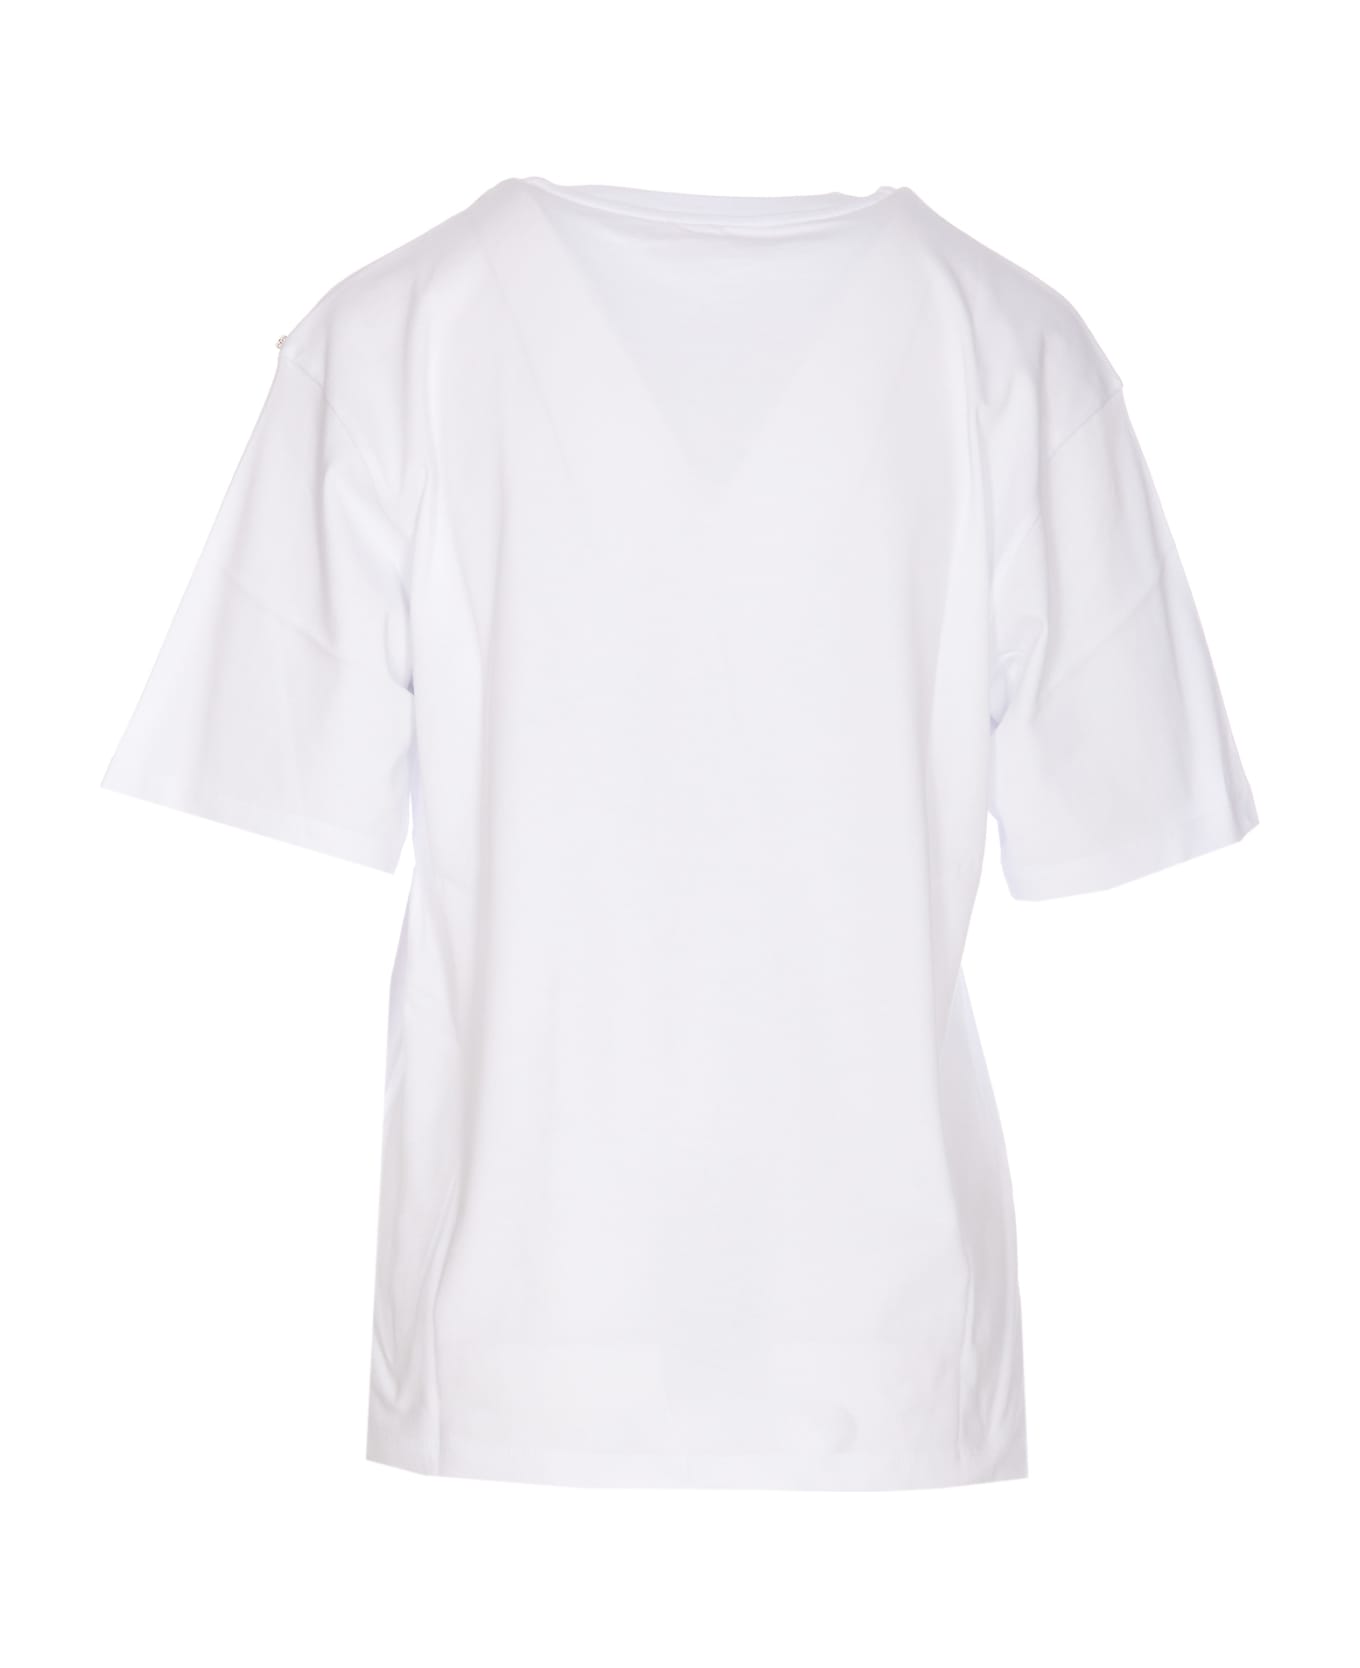 SportMax Jersey Cotton Print T-shirt - White